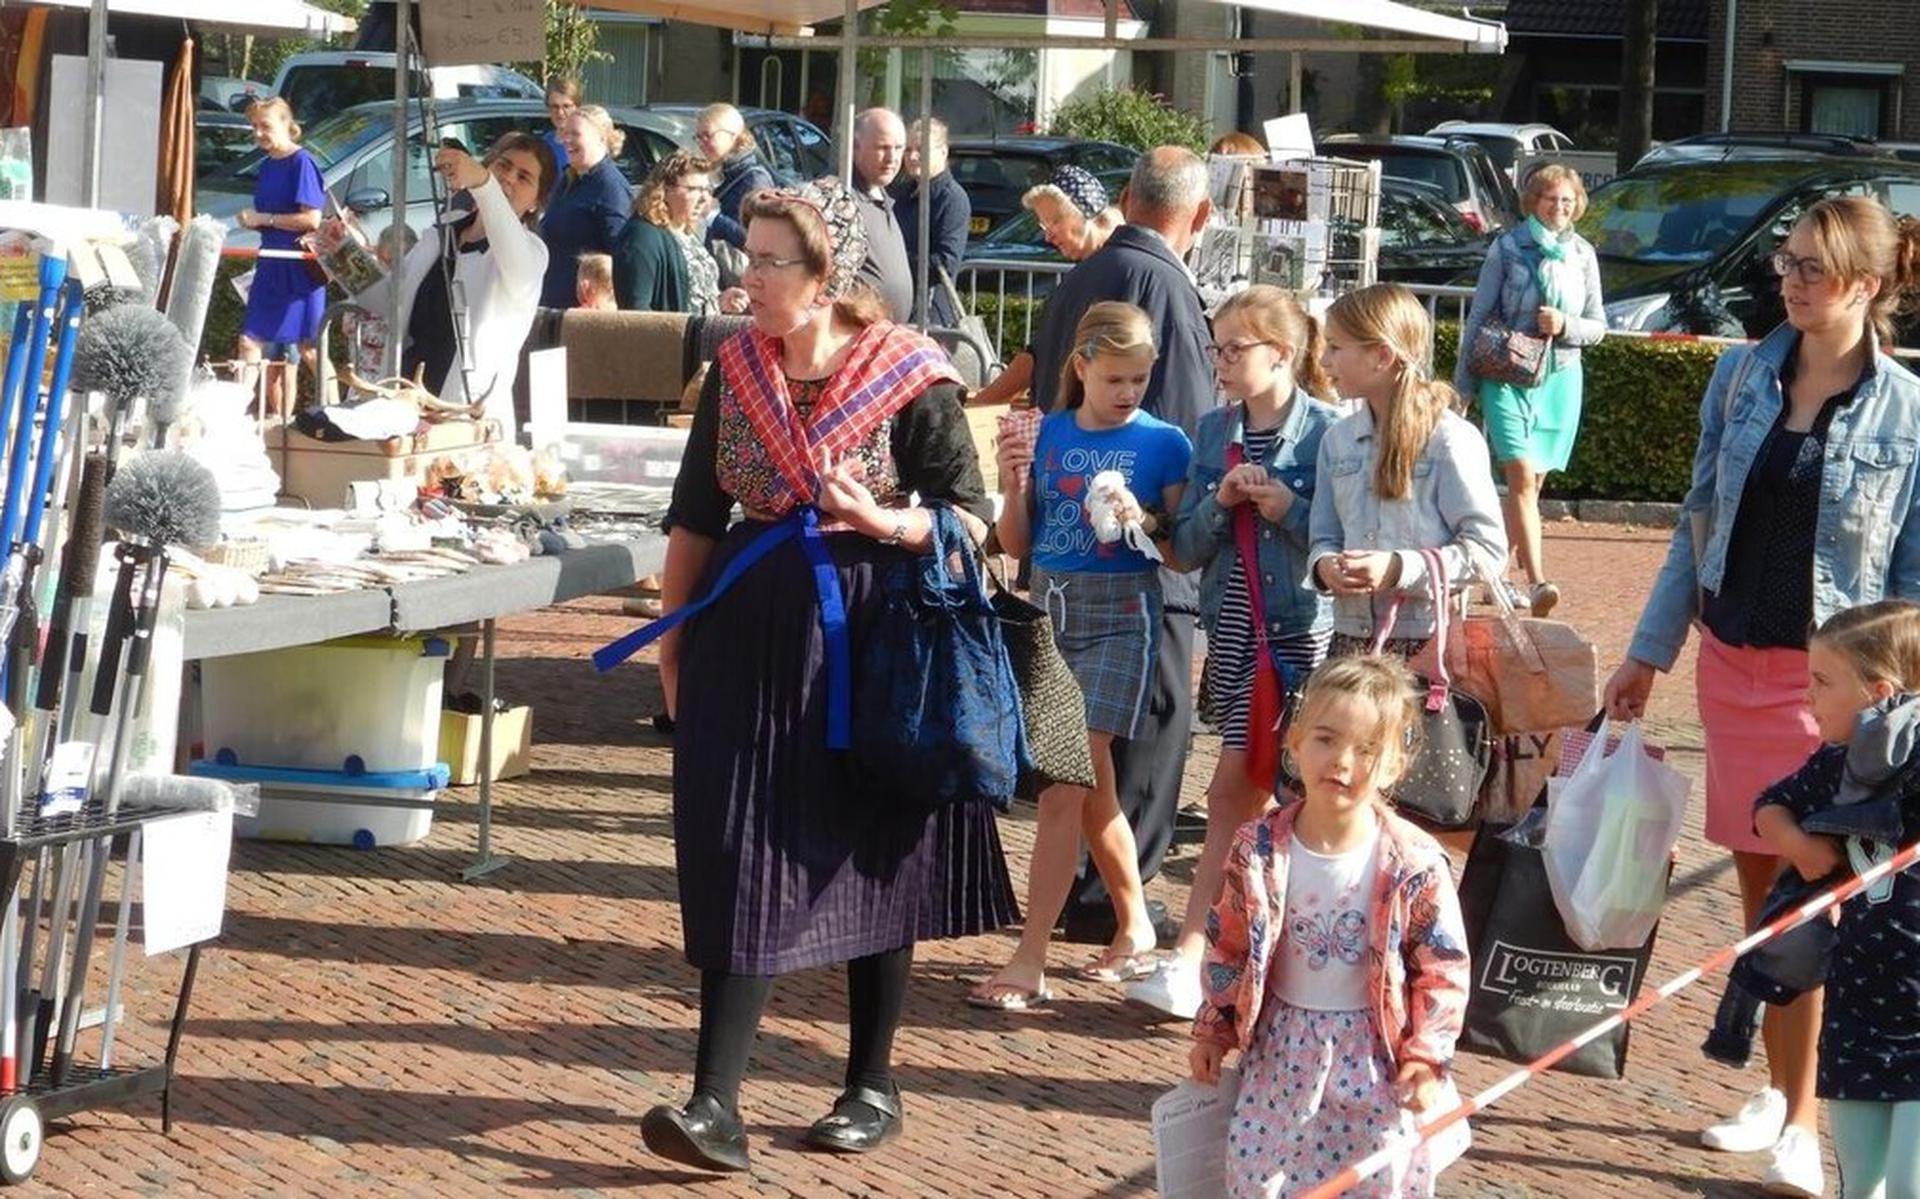 Het Marktplein in Staphorst is het decor voor de talentenmarkt. Het plein leent zich vaker voor zulke markten, zoals de verkoopdag Adullam.